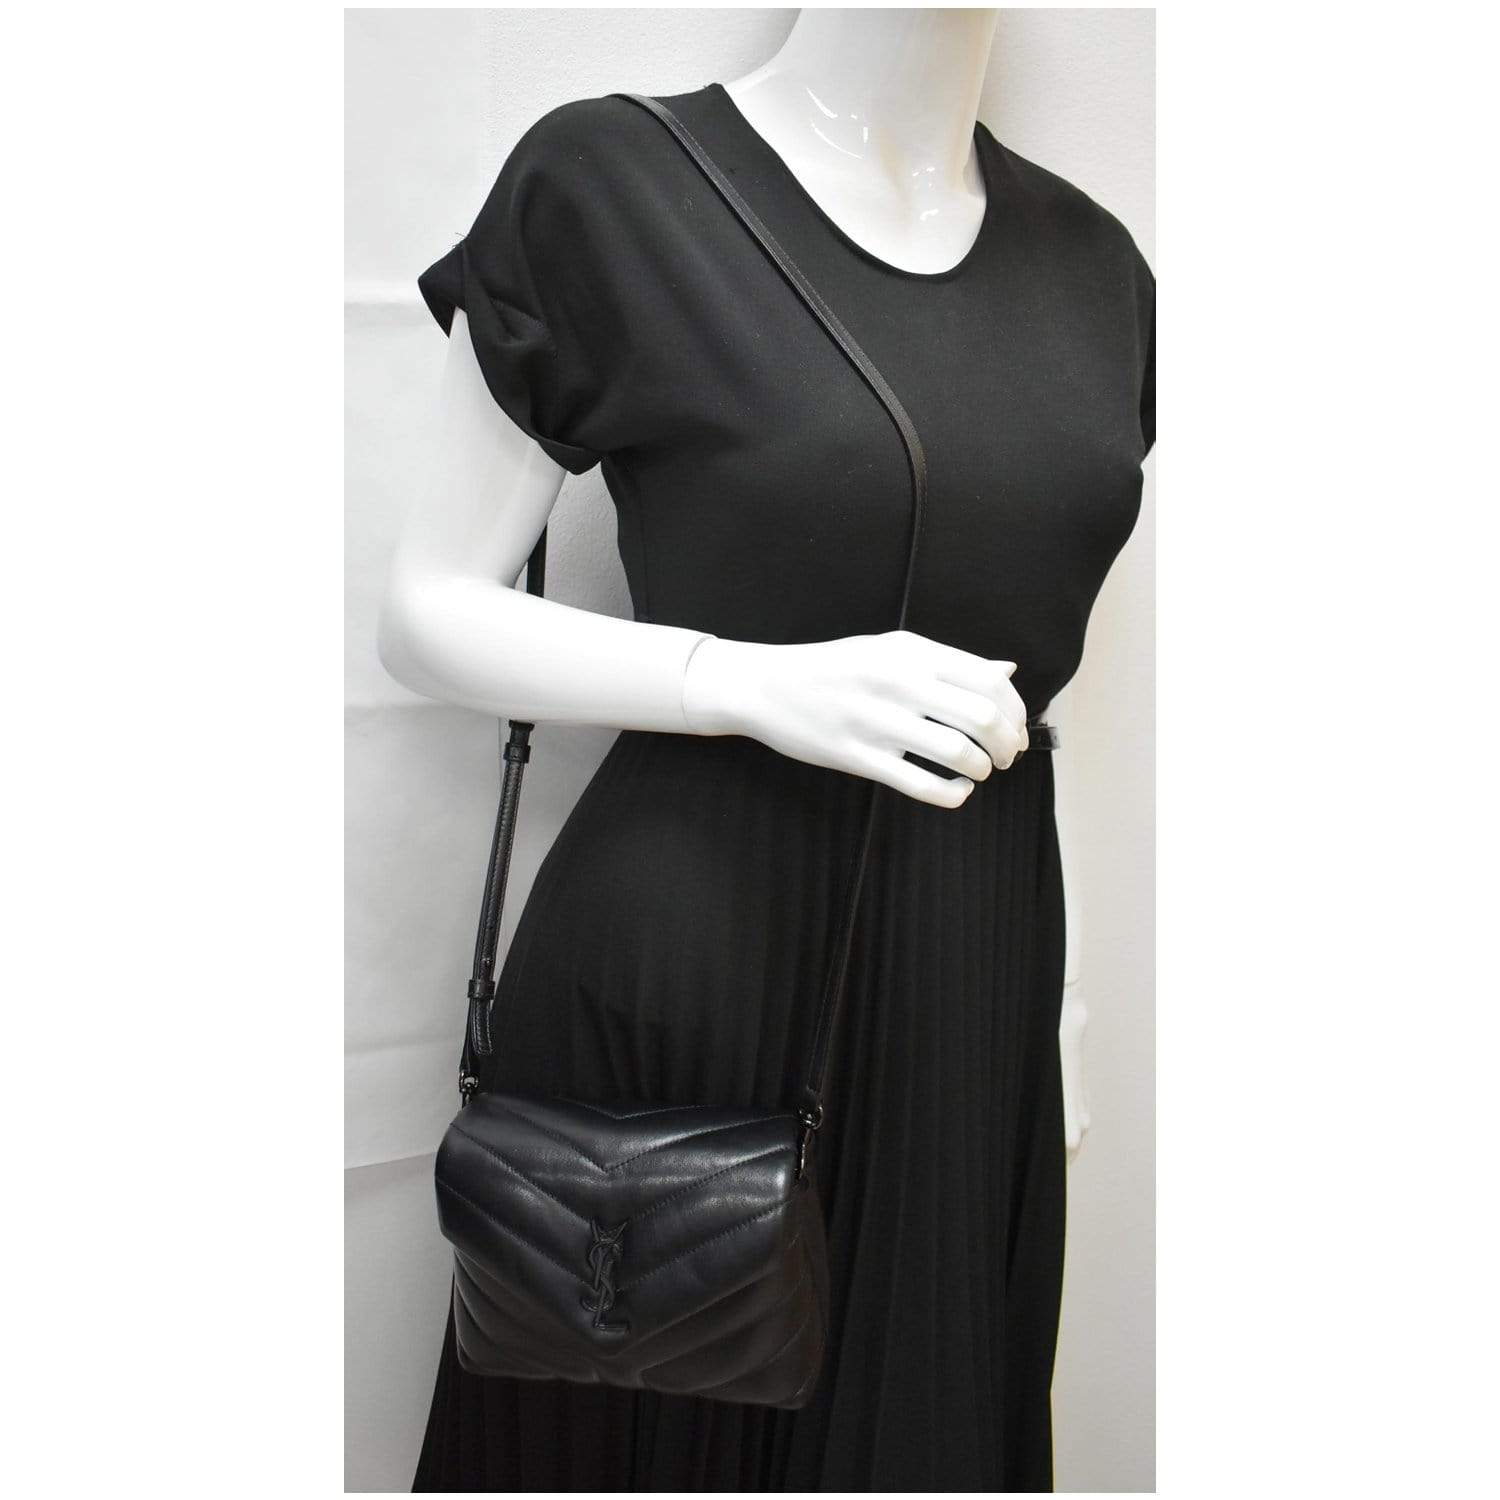 Shop Saint Laurent Mini Loulou Matelassé Leather Shoulder Bag